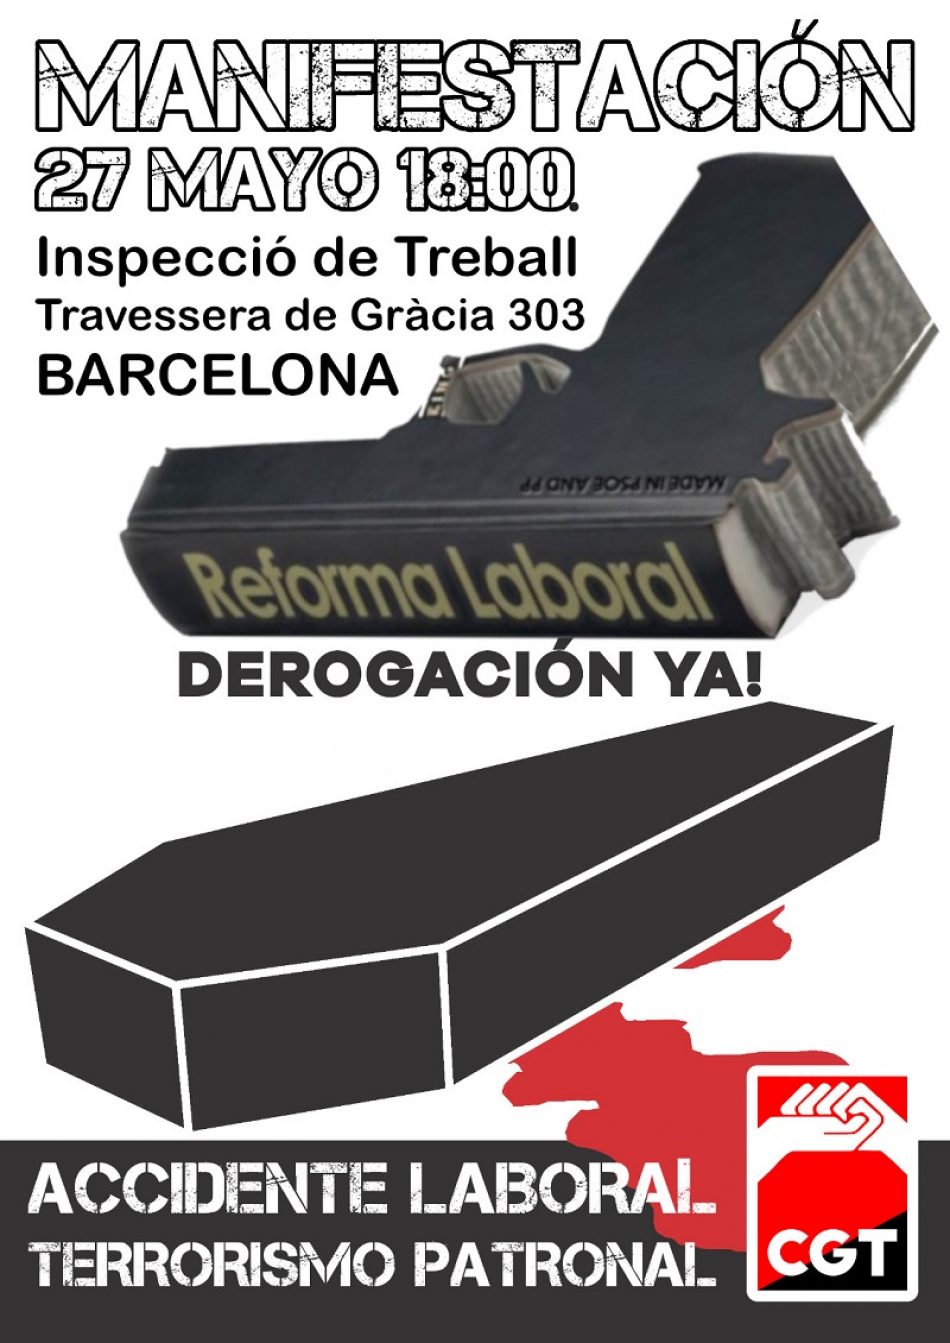 Convocada manifestación en Barcelona por la derogación de las reformas laborales y en denuncia de la siniestralidad laboral